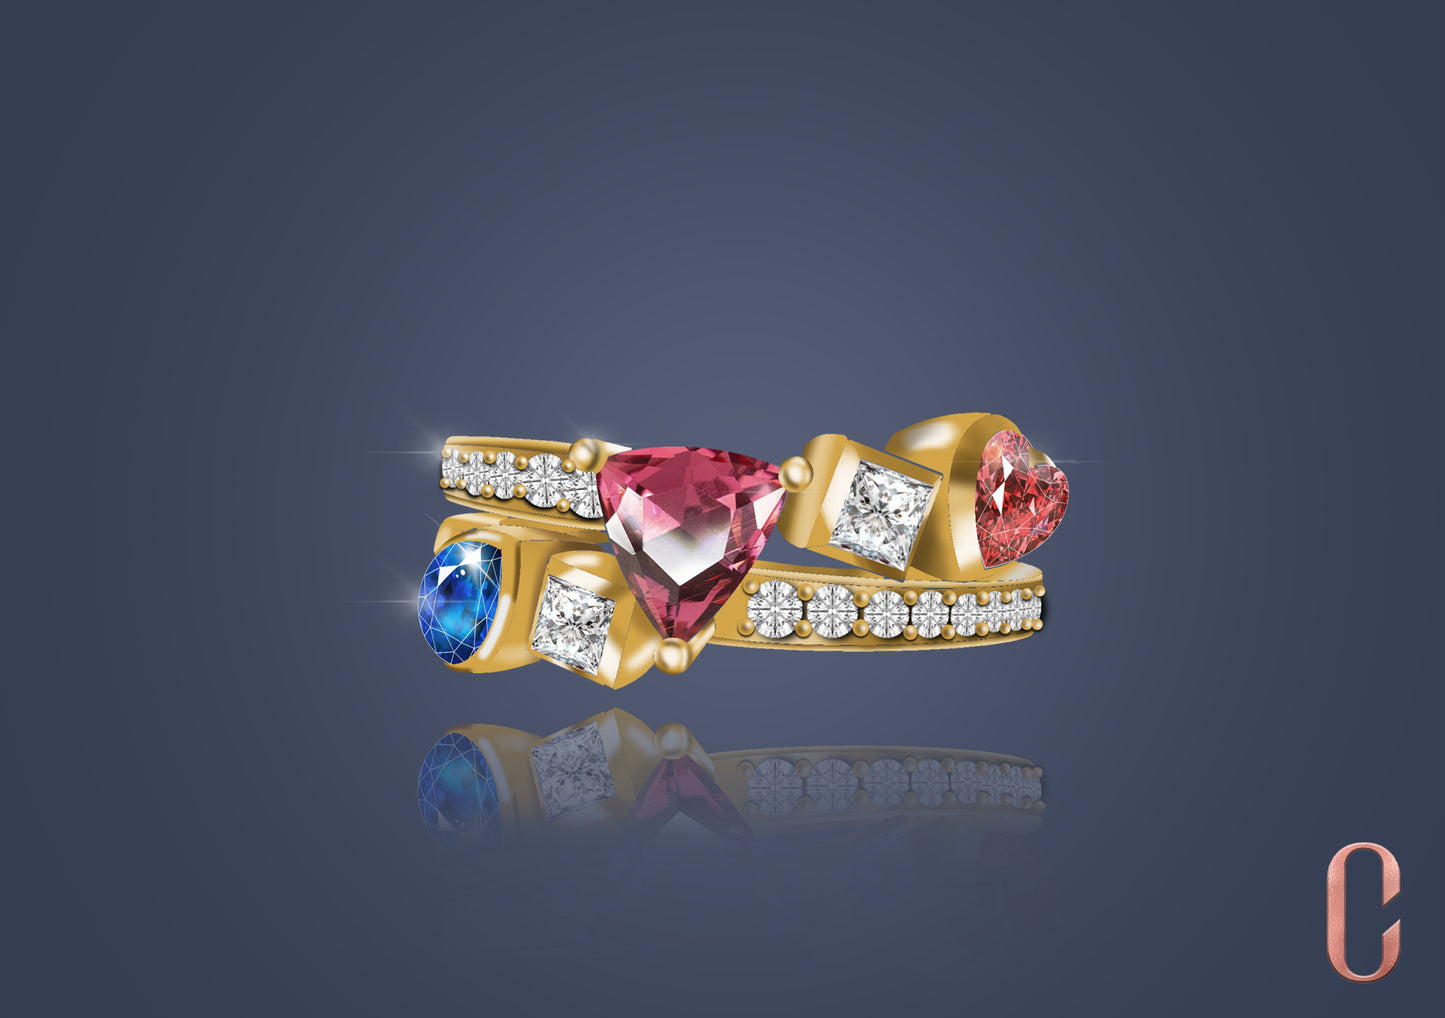 Round diamond Ring with Pink Saphire emerald and princess diamond